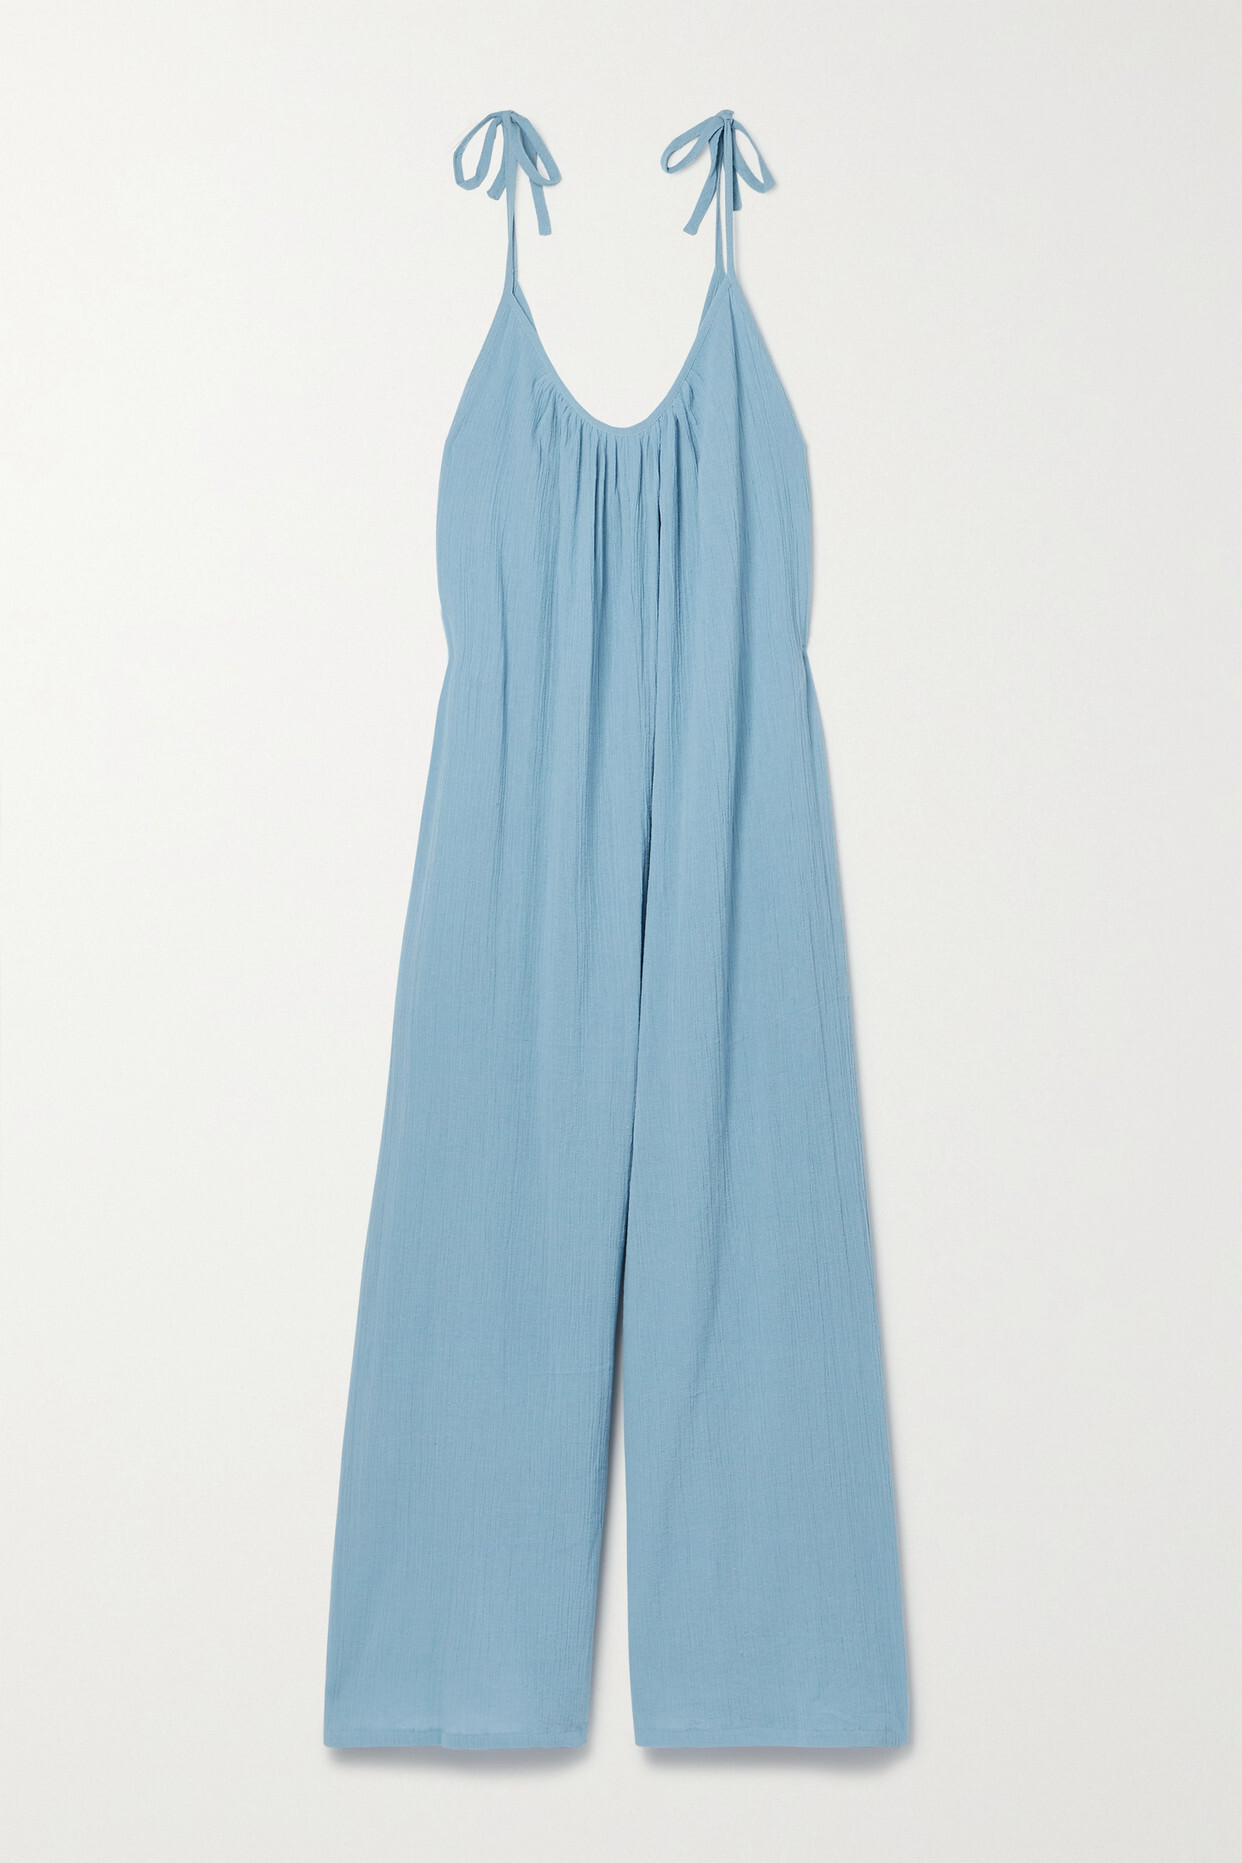 Suzie Kondi - Besa Crinkled Cotton-gauze Jumpsuit - Blue